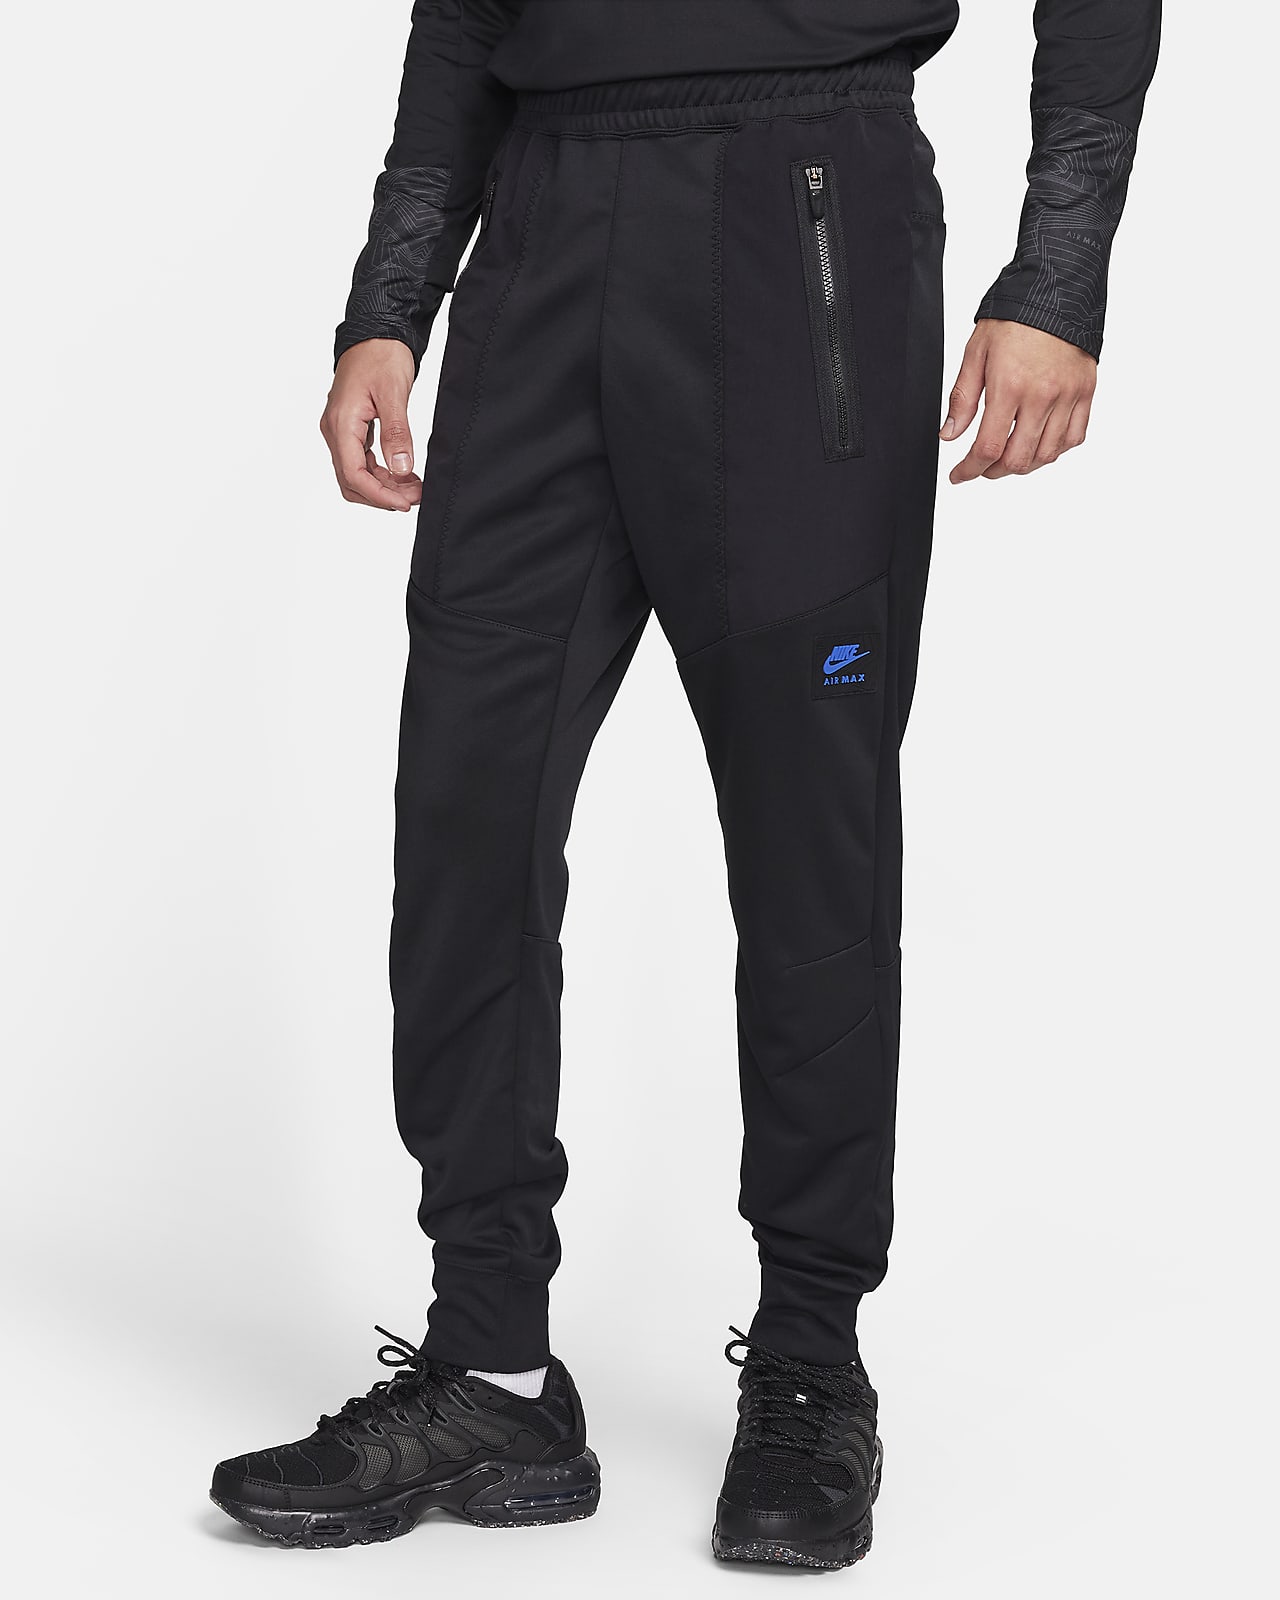 Pantalon de jogging Nike Air Max pour Homme